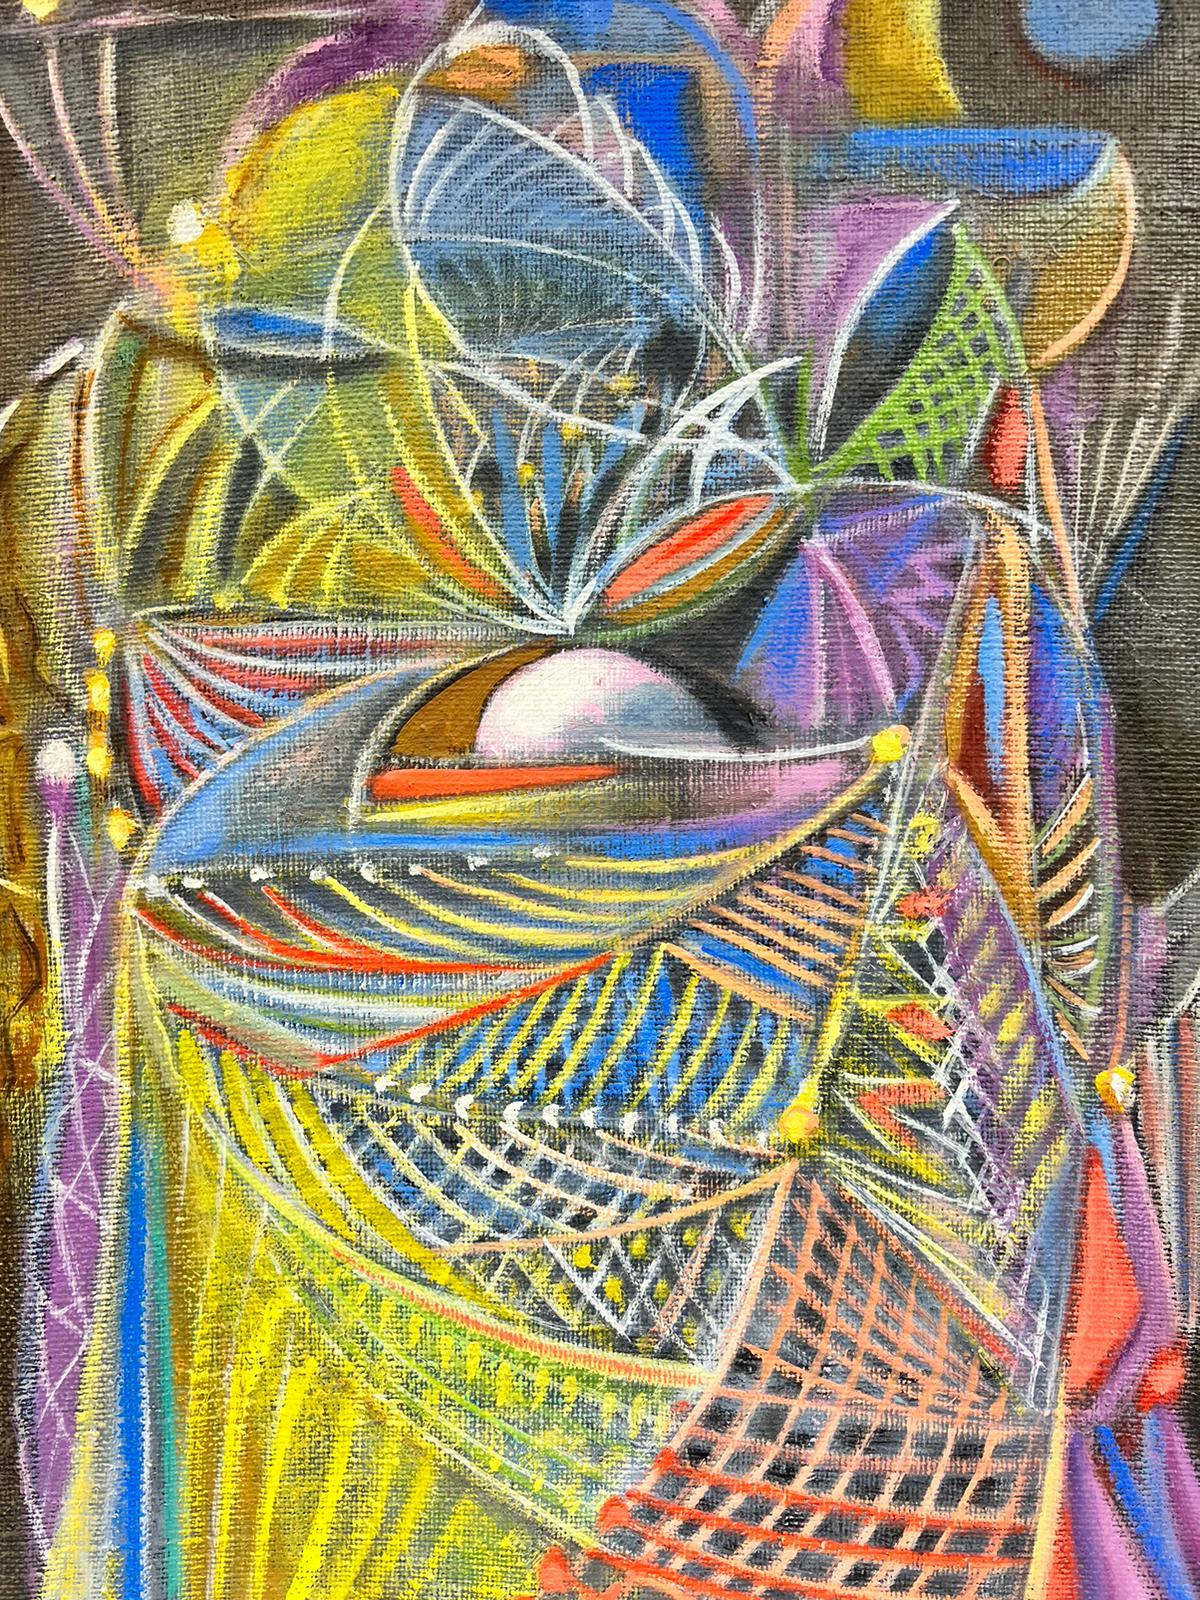 Künstler/Schule: Französische Abstraktion, signiert von T. Fabris, datiert 1987

Titel: Abstrakte surrealistische Komposition

Medium: Öl auf Leinwand, ungerahmt

Gemälde: 26 x 21 Zoll

Farben: Schwarz, rot, gelb, rosa, lila, blau, weiß, orange,